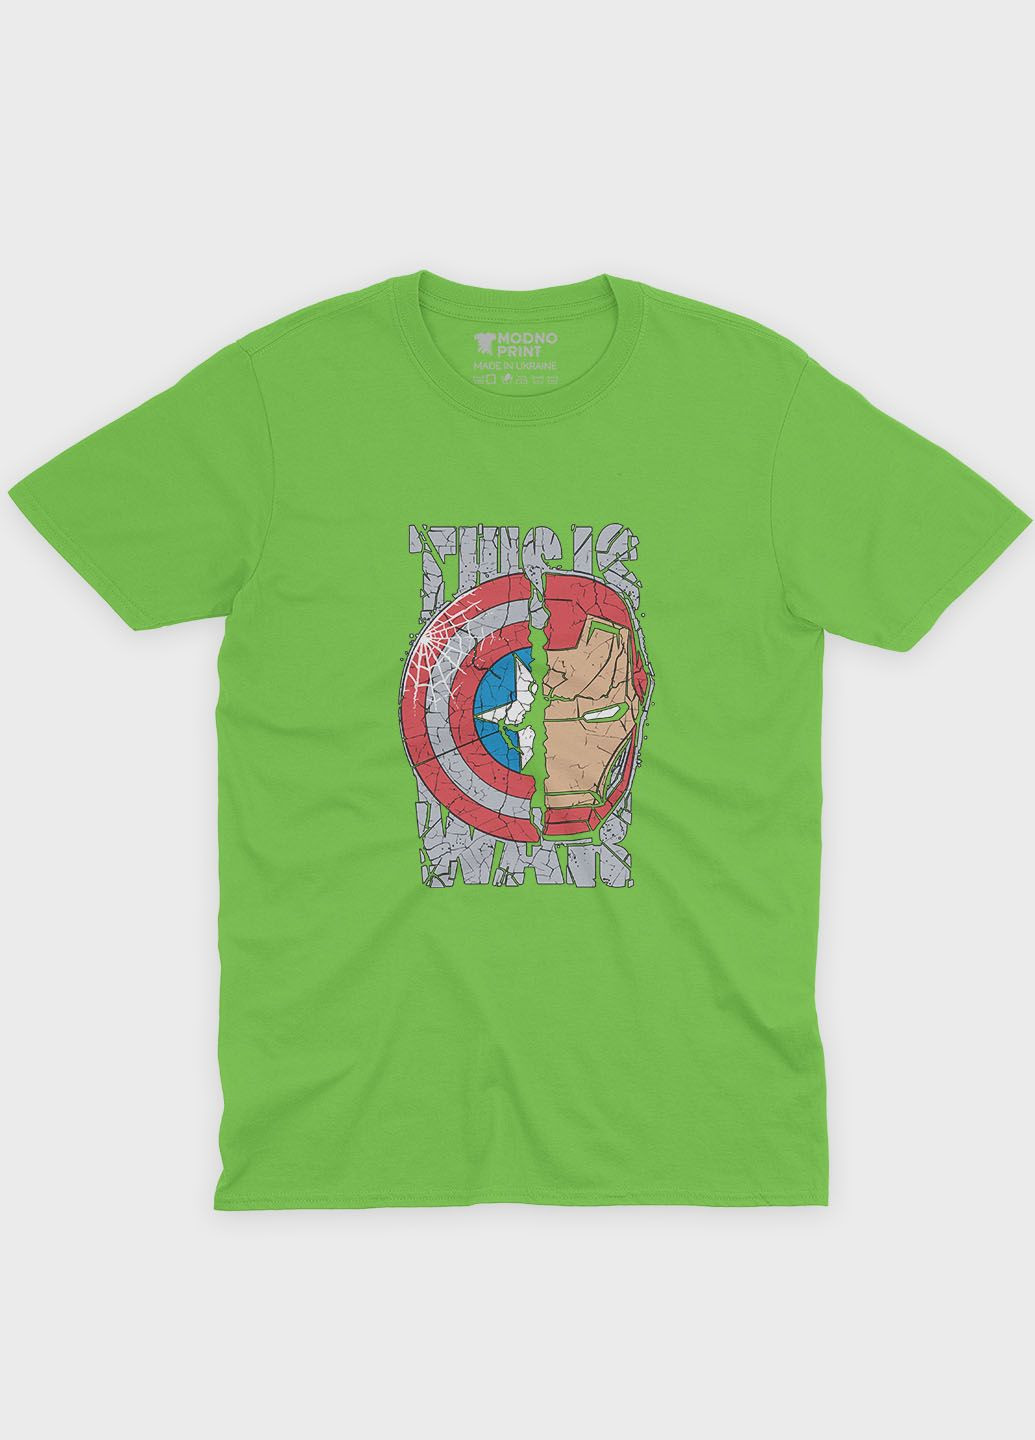 Салатова демісезонна футболка для хлопчика з принтом супергероя - залізна людина (ts001-1-kiw-006-016-021-b) Modno